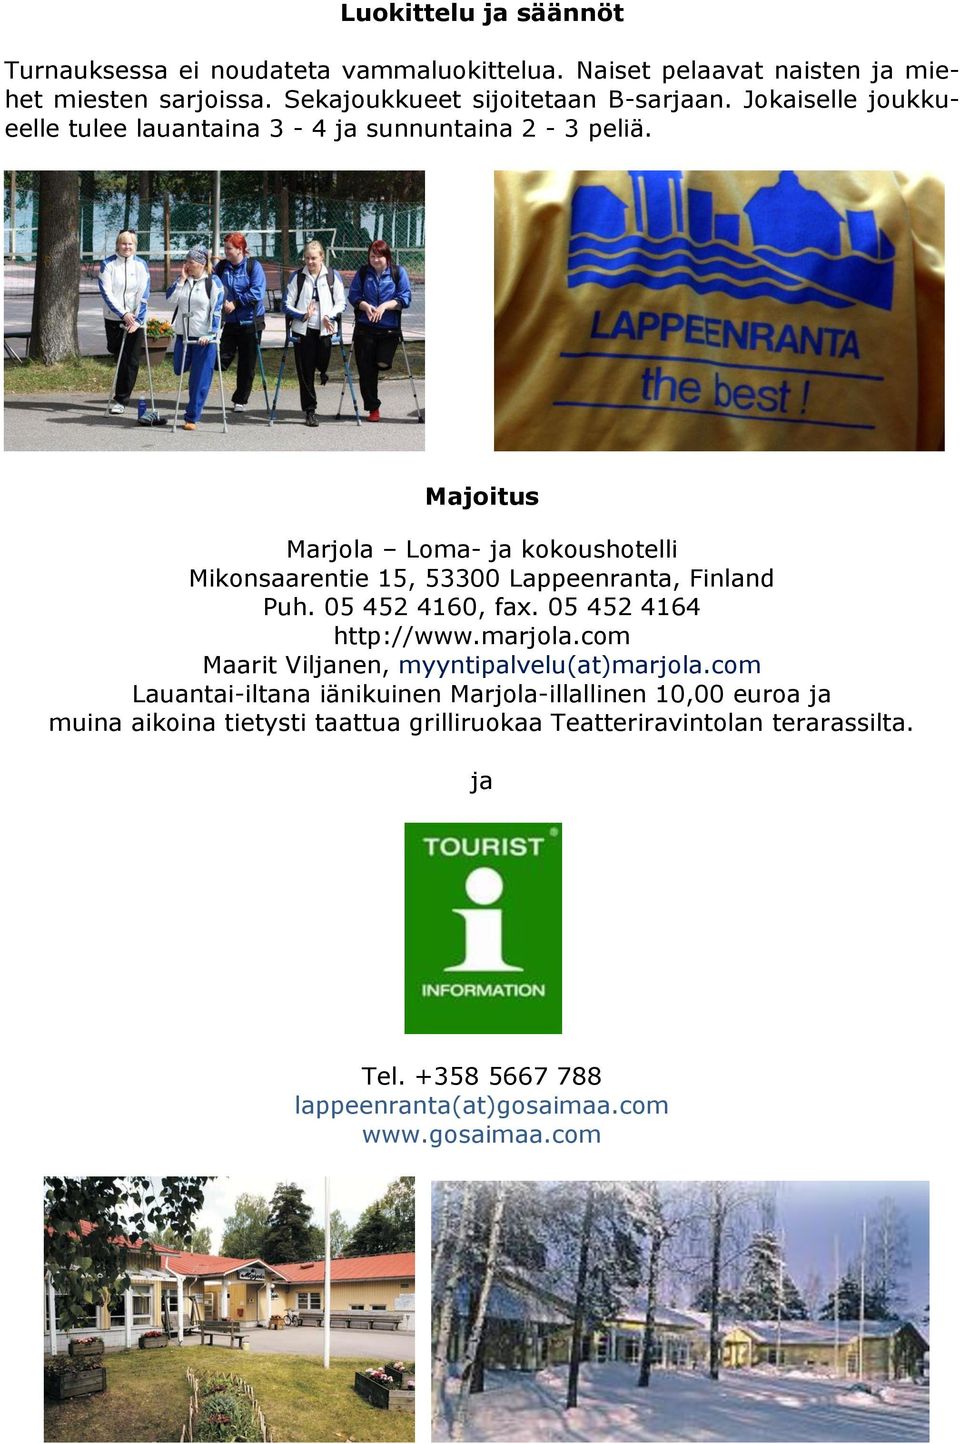 Majoitus Marjola Loma- ja kokoushotelli Mikonsaarentie 15, 53300 Lappeenranta, Finland Puh. 05 452 4160, fax. 05 452 4164 http://www.marjola.